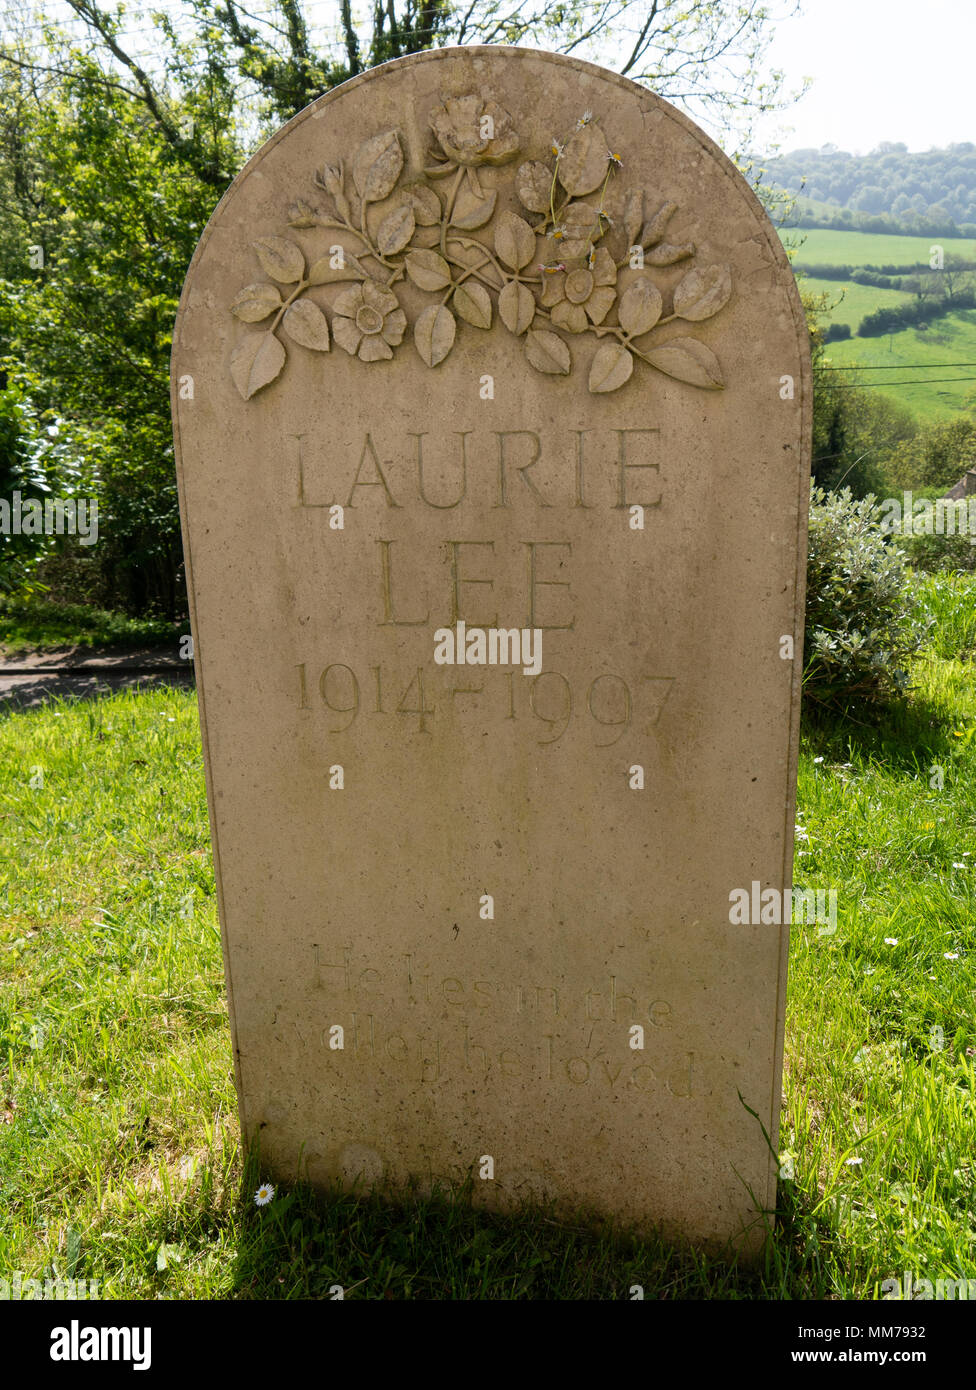 Tomba di pietra del Laurie Lee, autore di sidro di mele con Rosie, Slad, Gloucestershire, Regno Unito Foto Stock